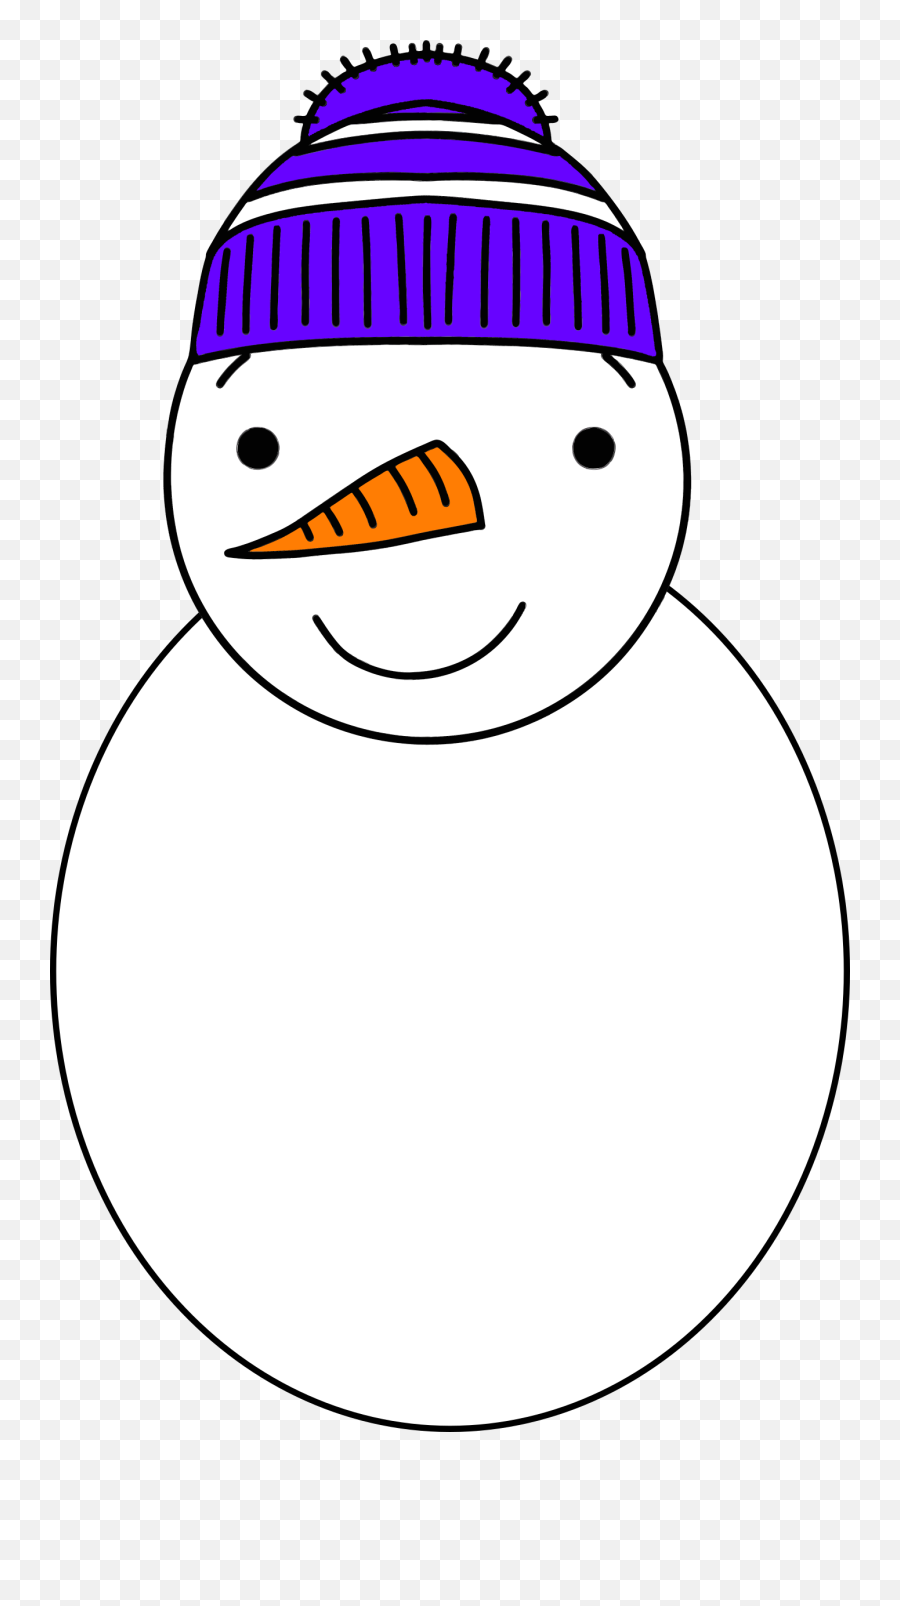 Computer Icons Snowman Cartoon Face - Snowman Emoji,Snowman Face Clipart